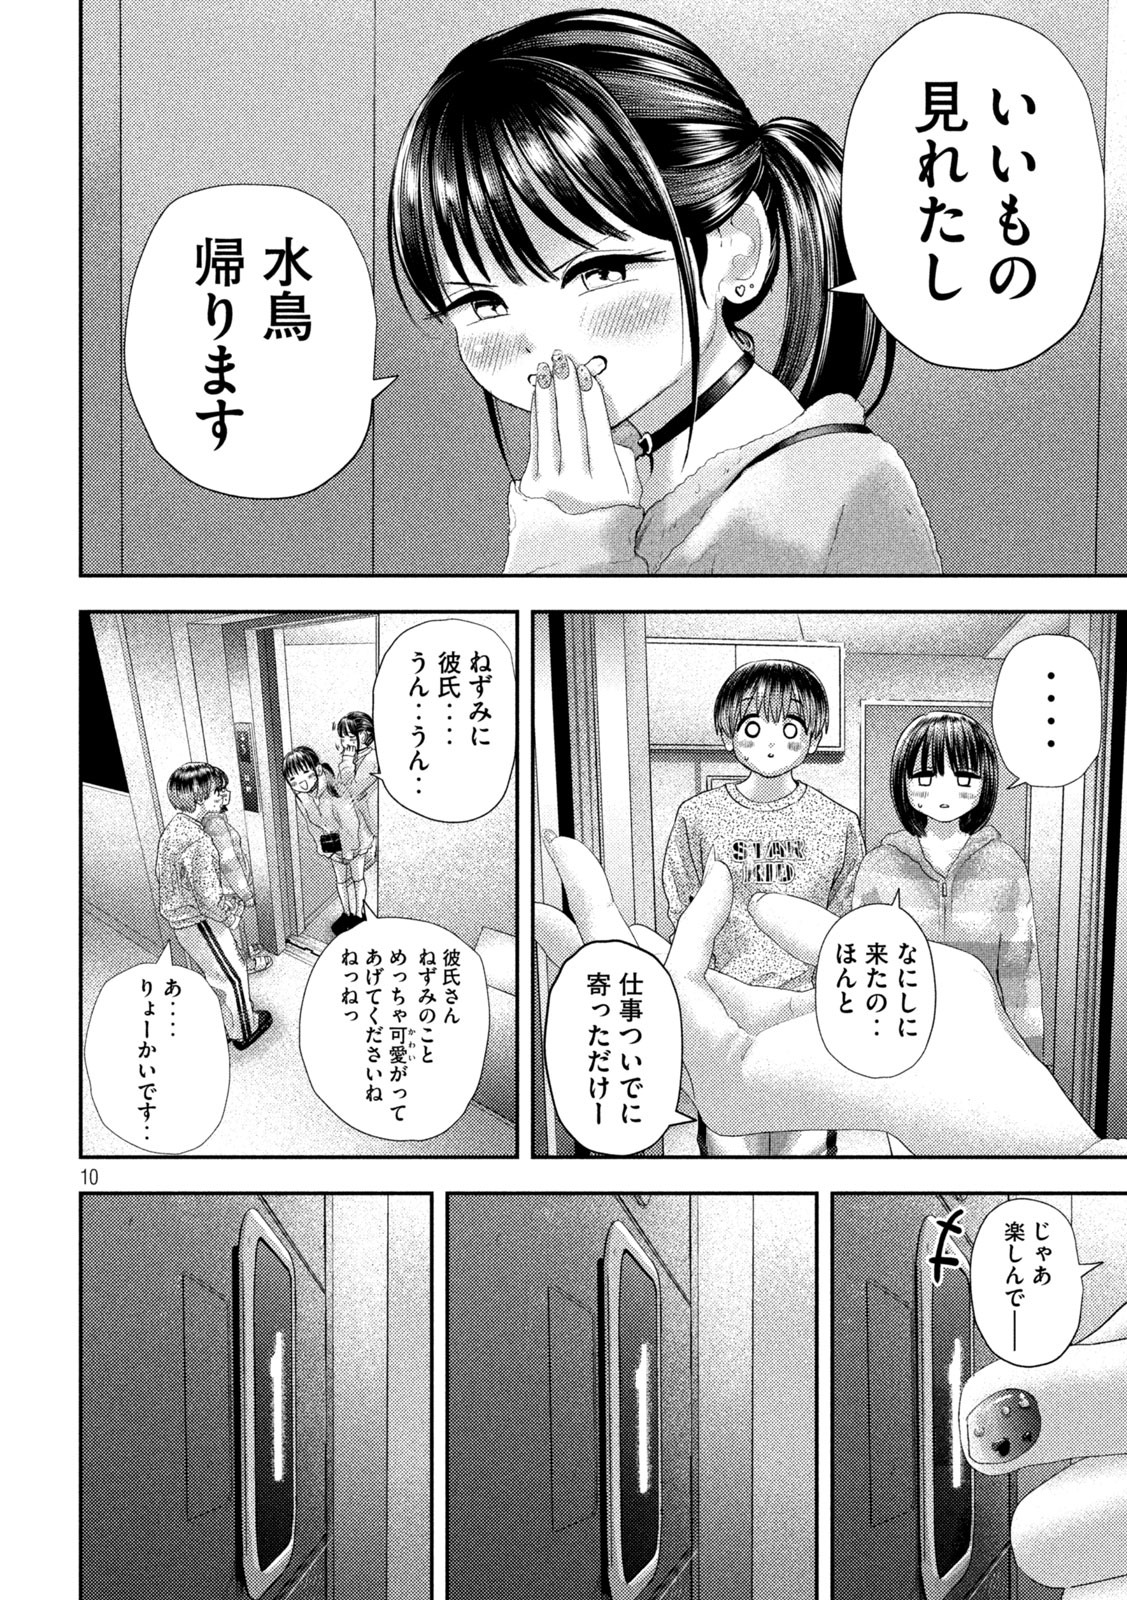 Nezumi no Koi - Chapter 30 - Page 10